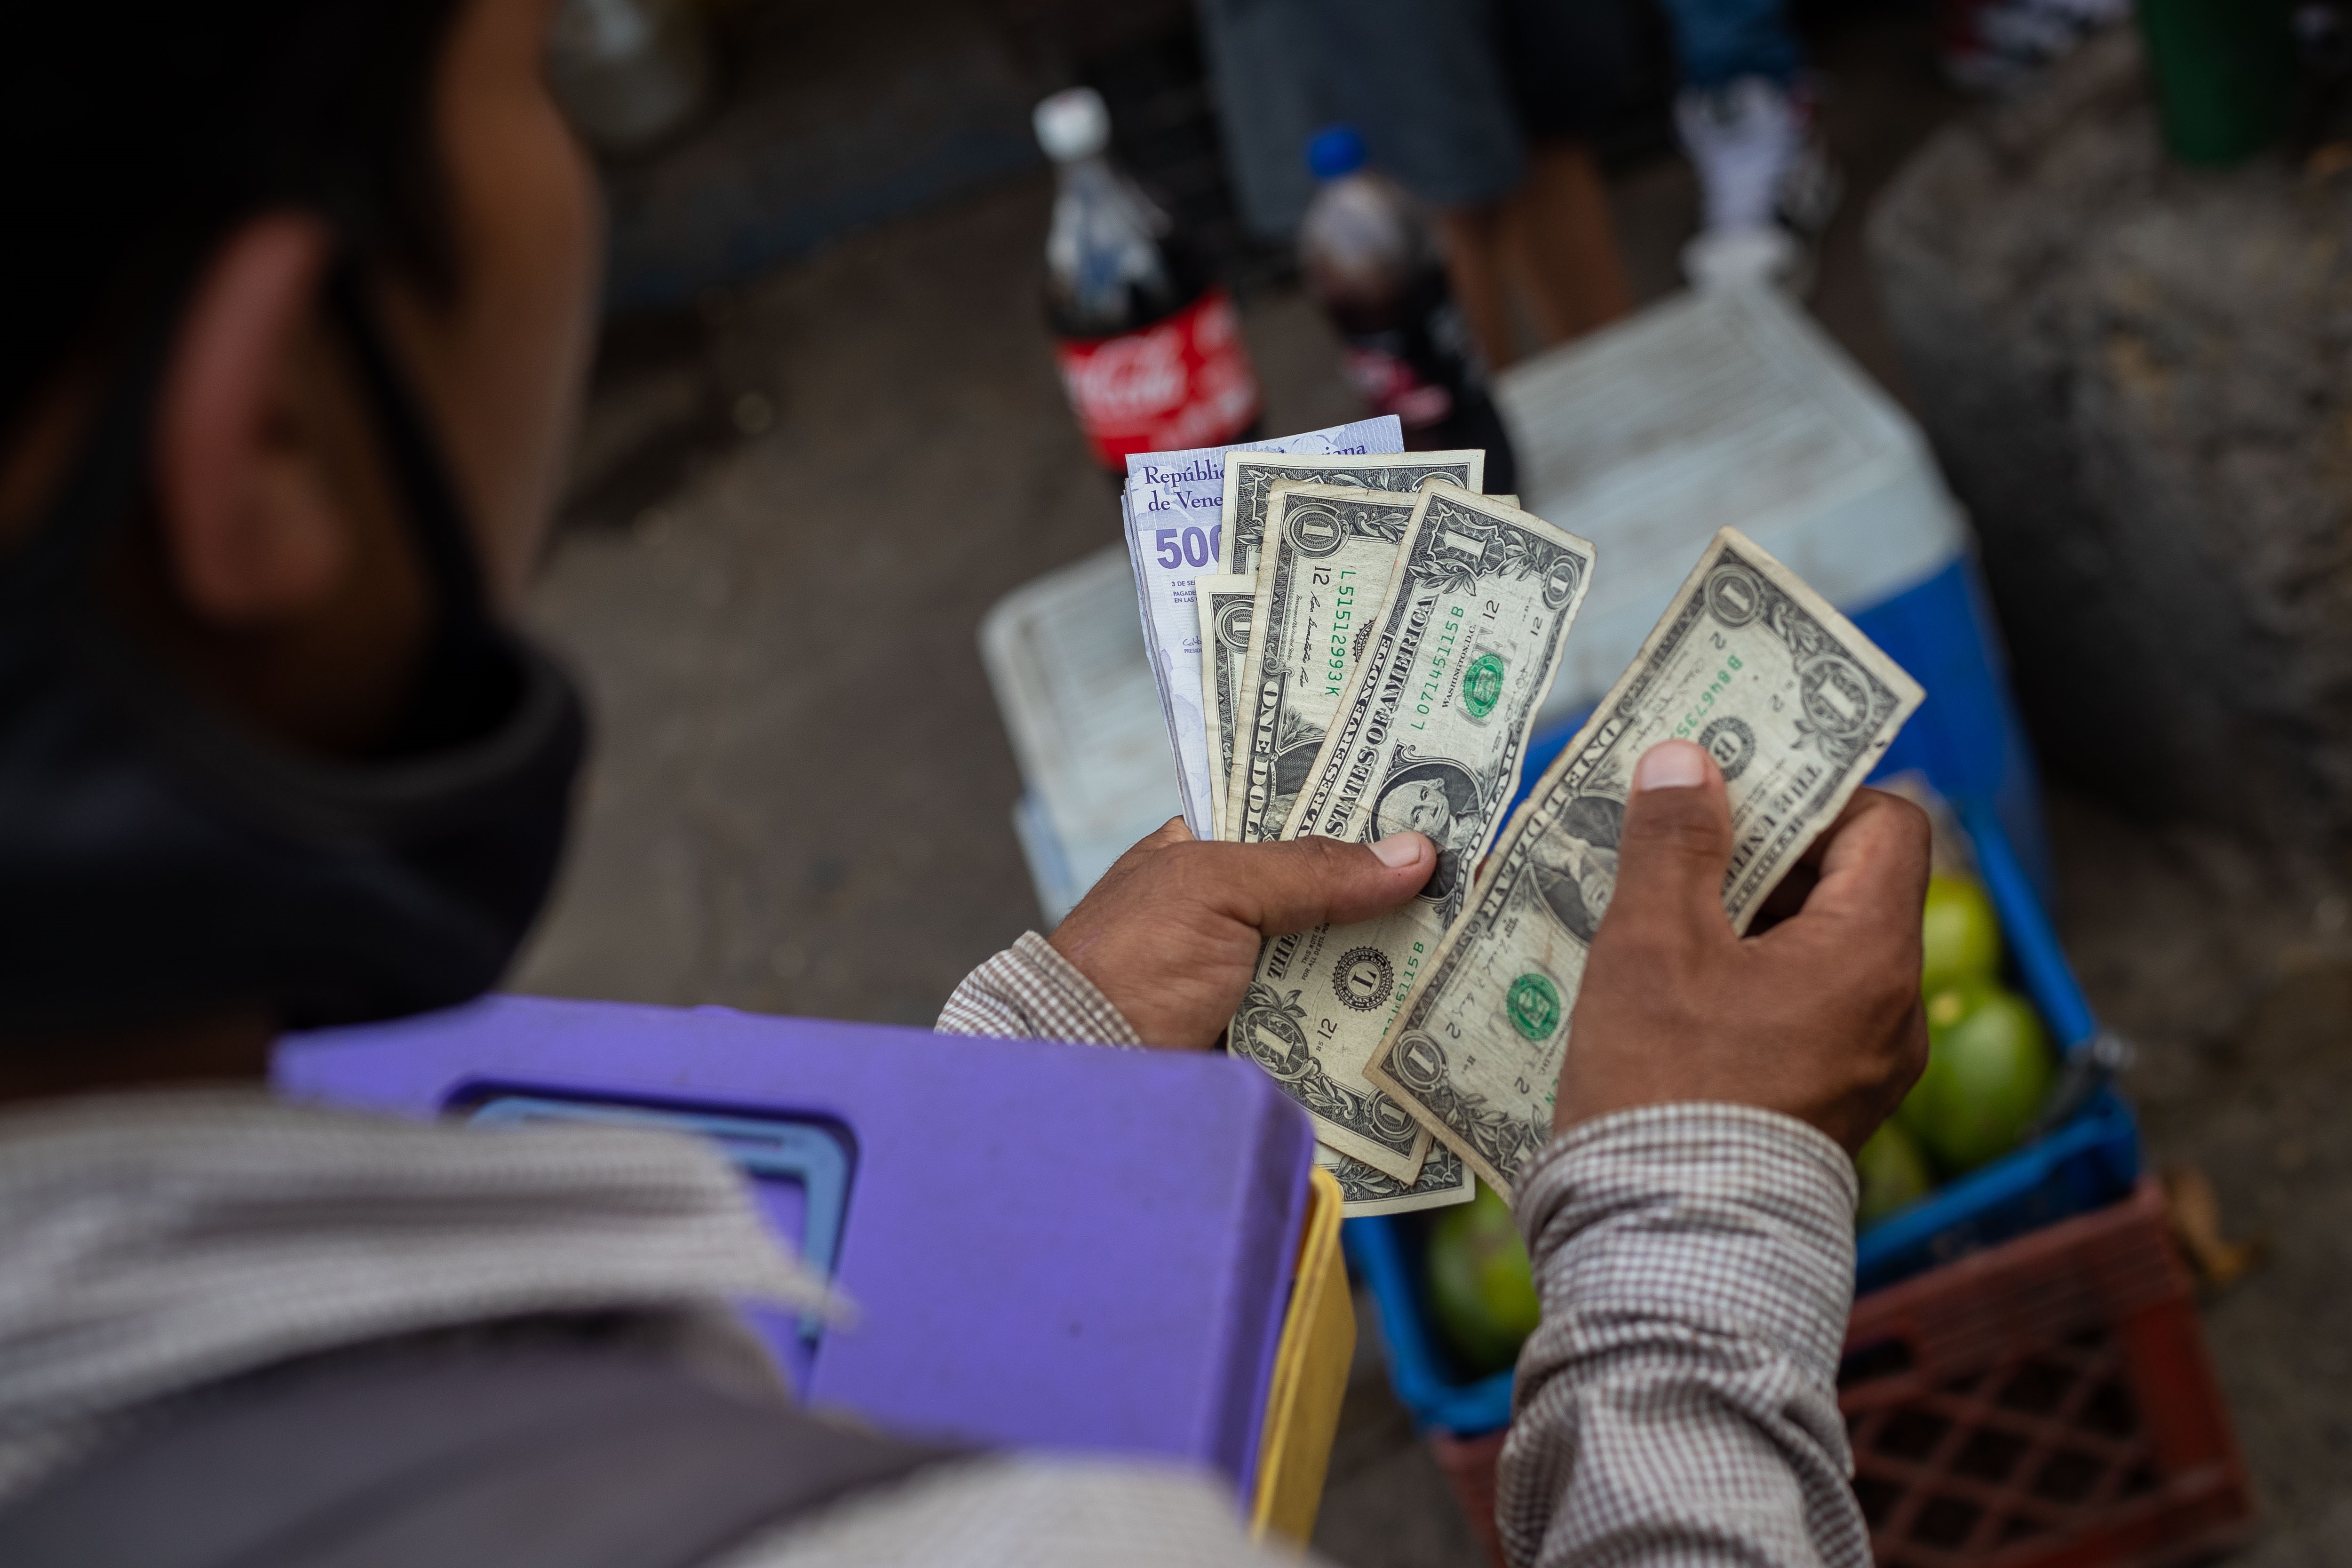 El nuevo impuesto para pagos con dólares en Venezuela es un “contrasentido”, según analistas